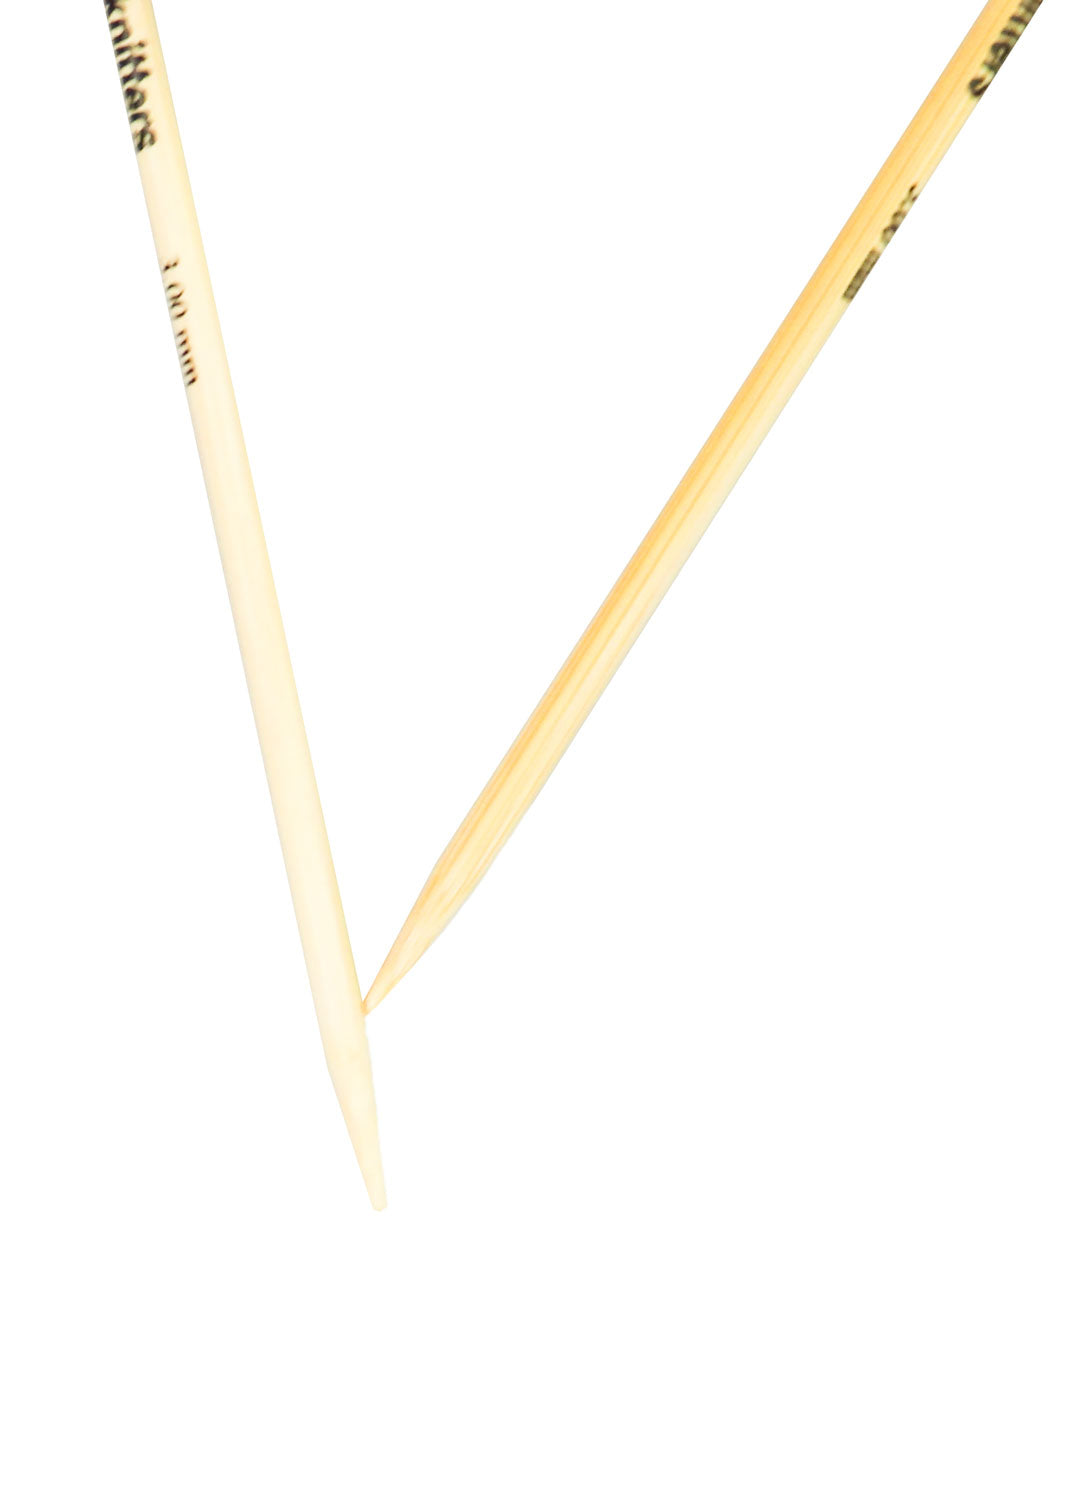 3mm Circular Bamboo Knitting Needles